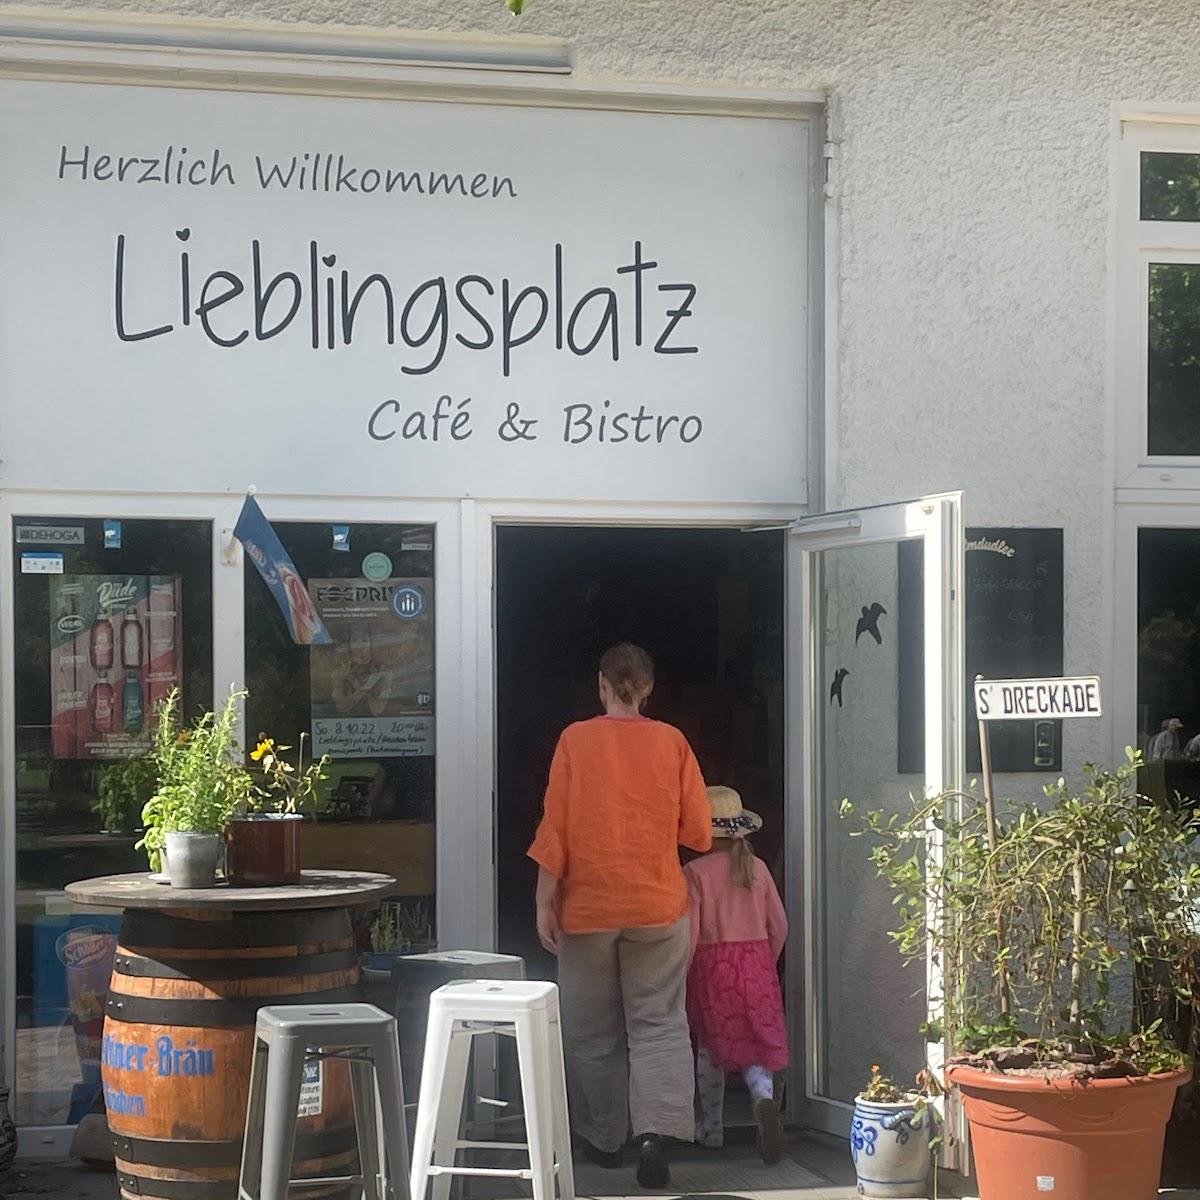 Restaurant "Brenzpark Gaststätte Lieblingsplatz" in Heidenheim an der Brenz